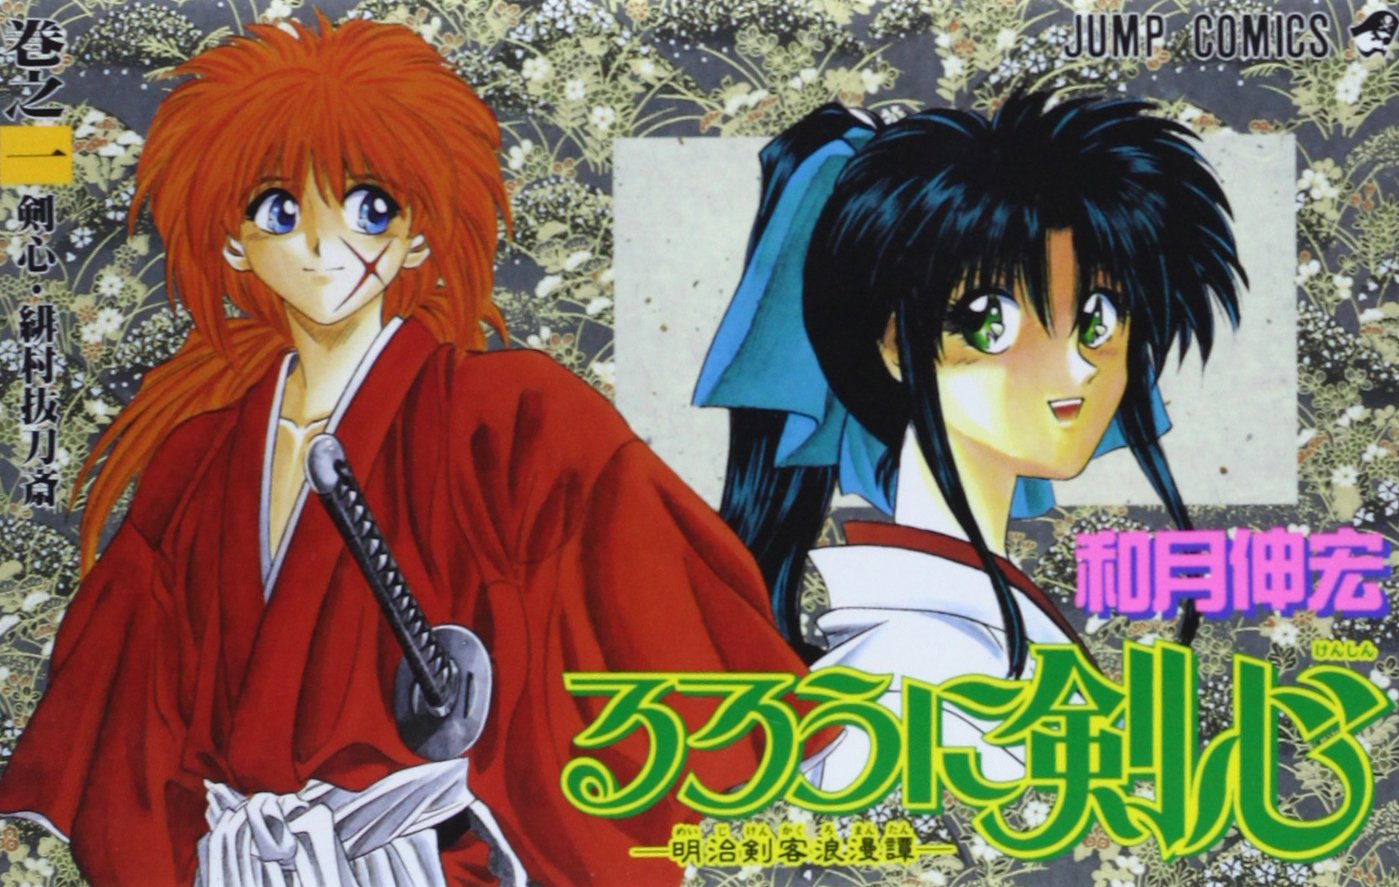 Kenshin - Himura Battousai, Rurouni Kenshin Wiki